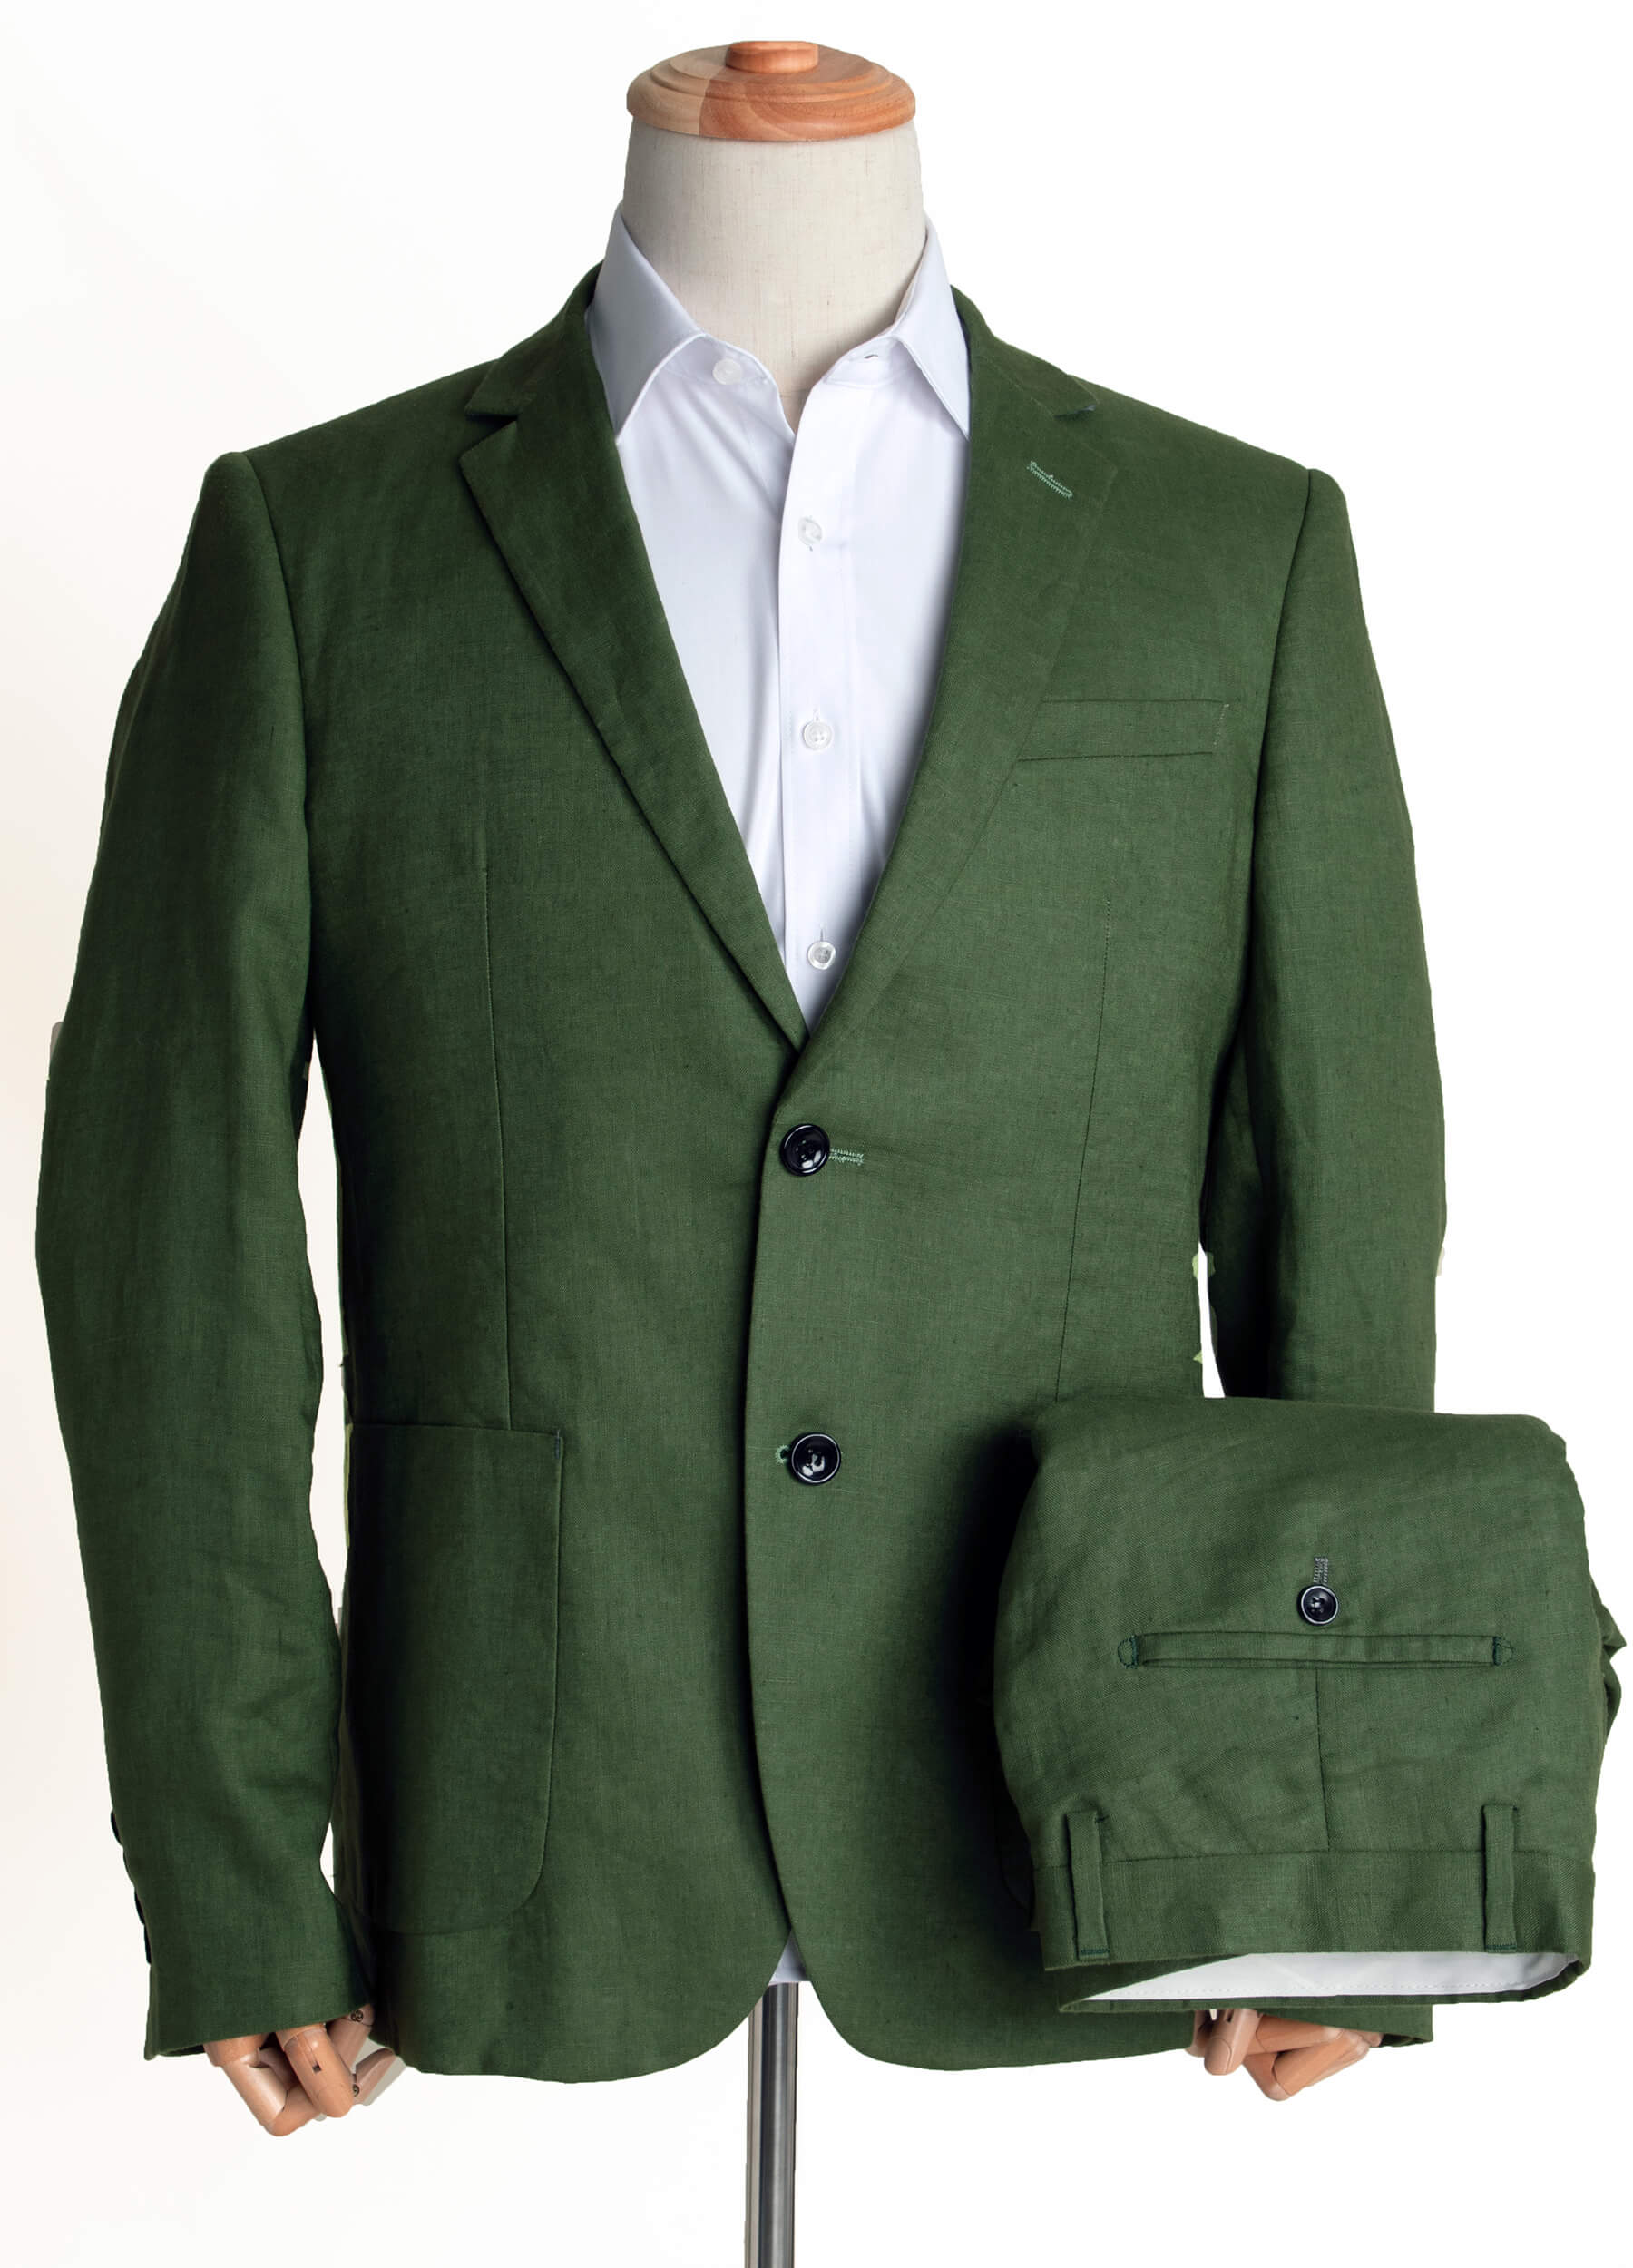 Olive green suit for men